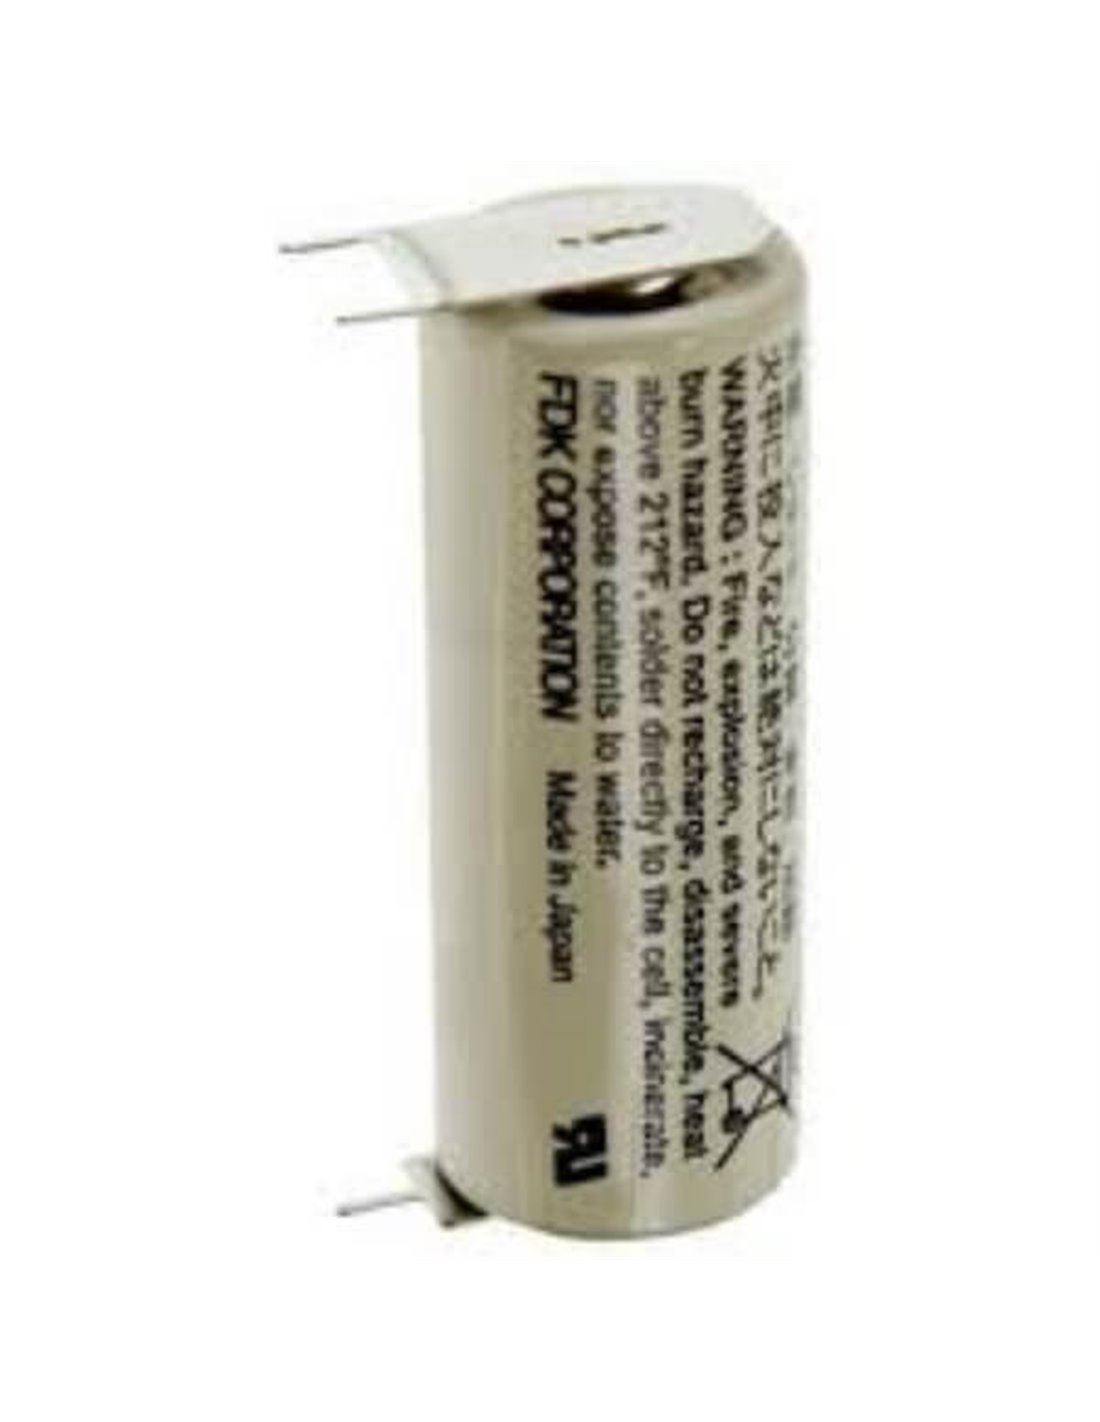 Battery Model Sanyo / FDK Sanyo Cr17450se-r Plc Battery, Cr17450se, Cr17450er 3V, 2400 mAh - 7.2Wh